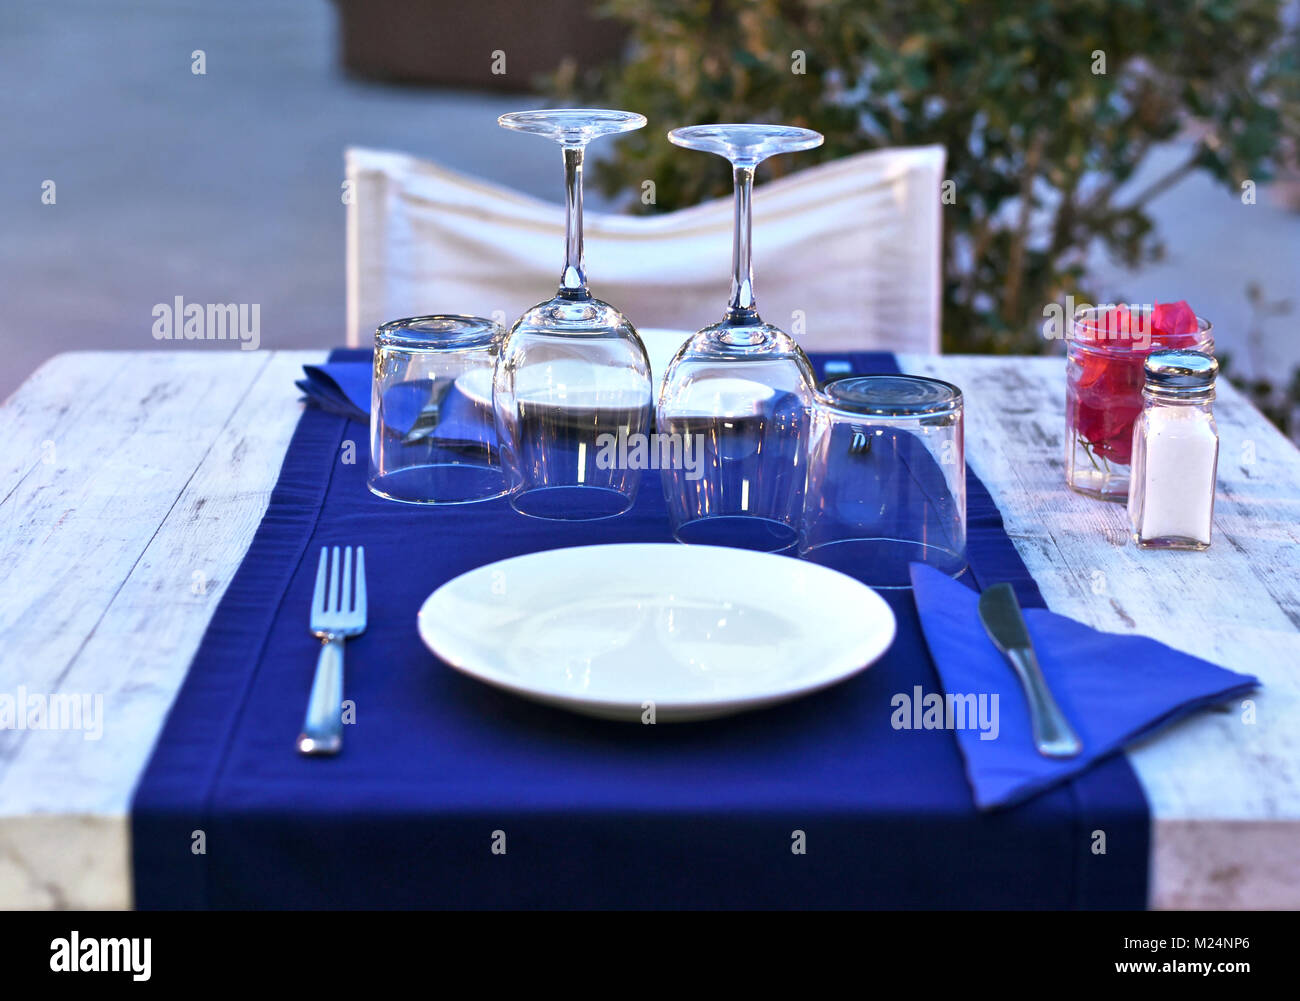 Tisch für zwei, Holztisch mit Tisch und weiße Platten. Wein, Gläser, Besteck und Tischdecke, ein romantisches Abendessen Szene. Stockfoto